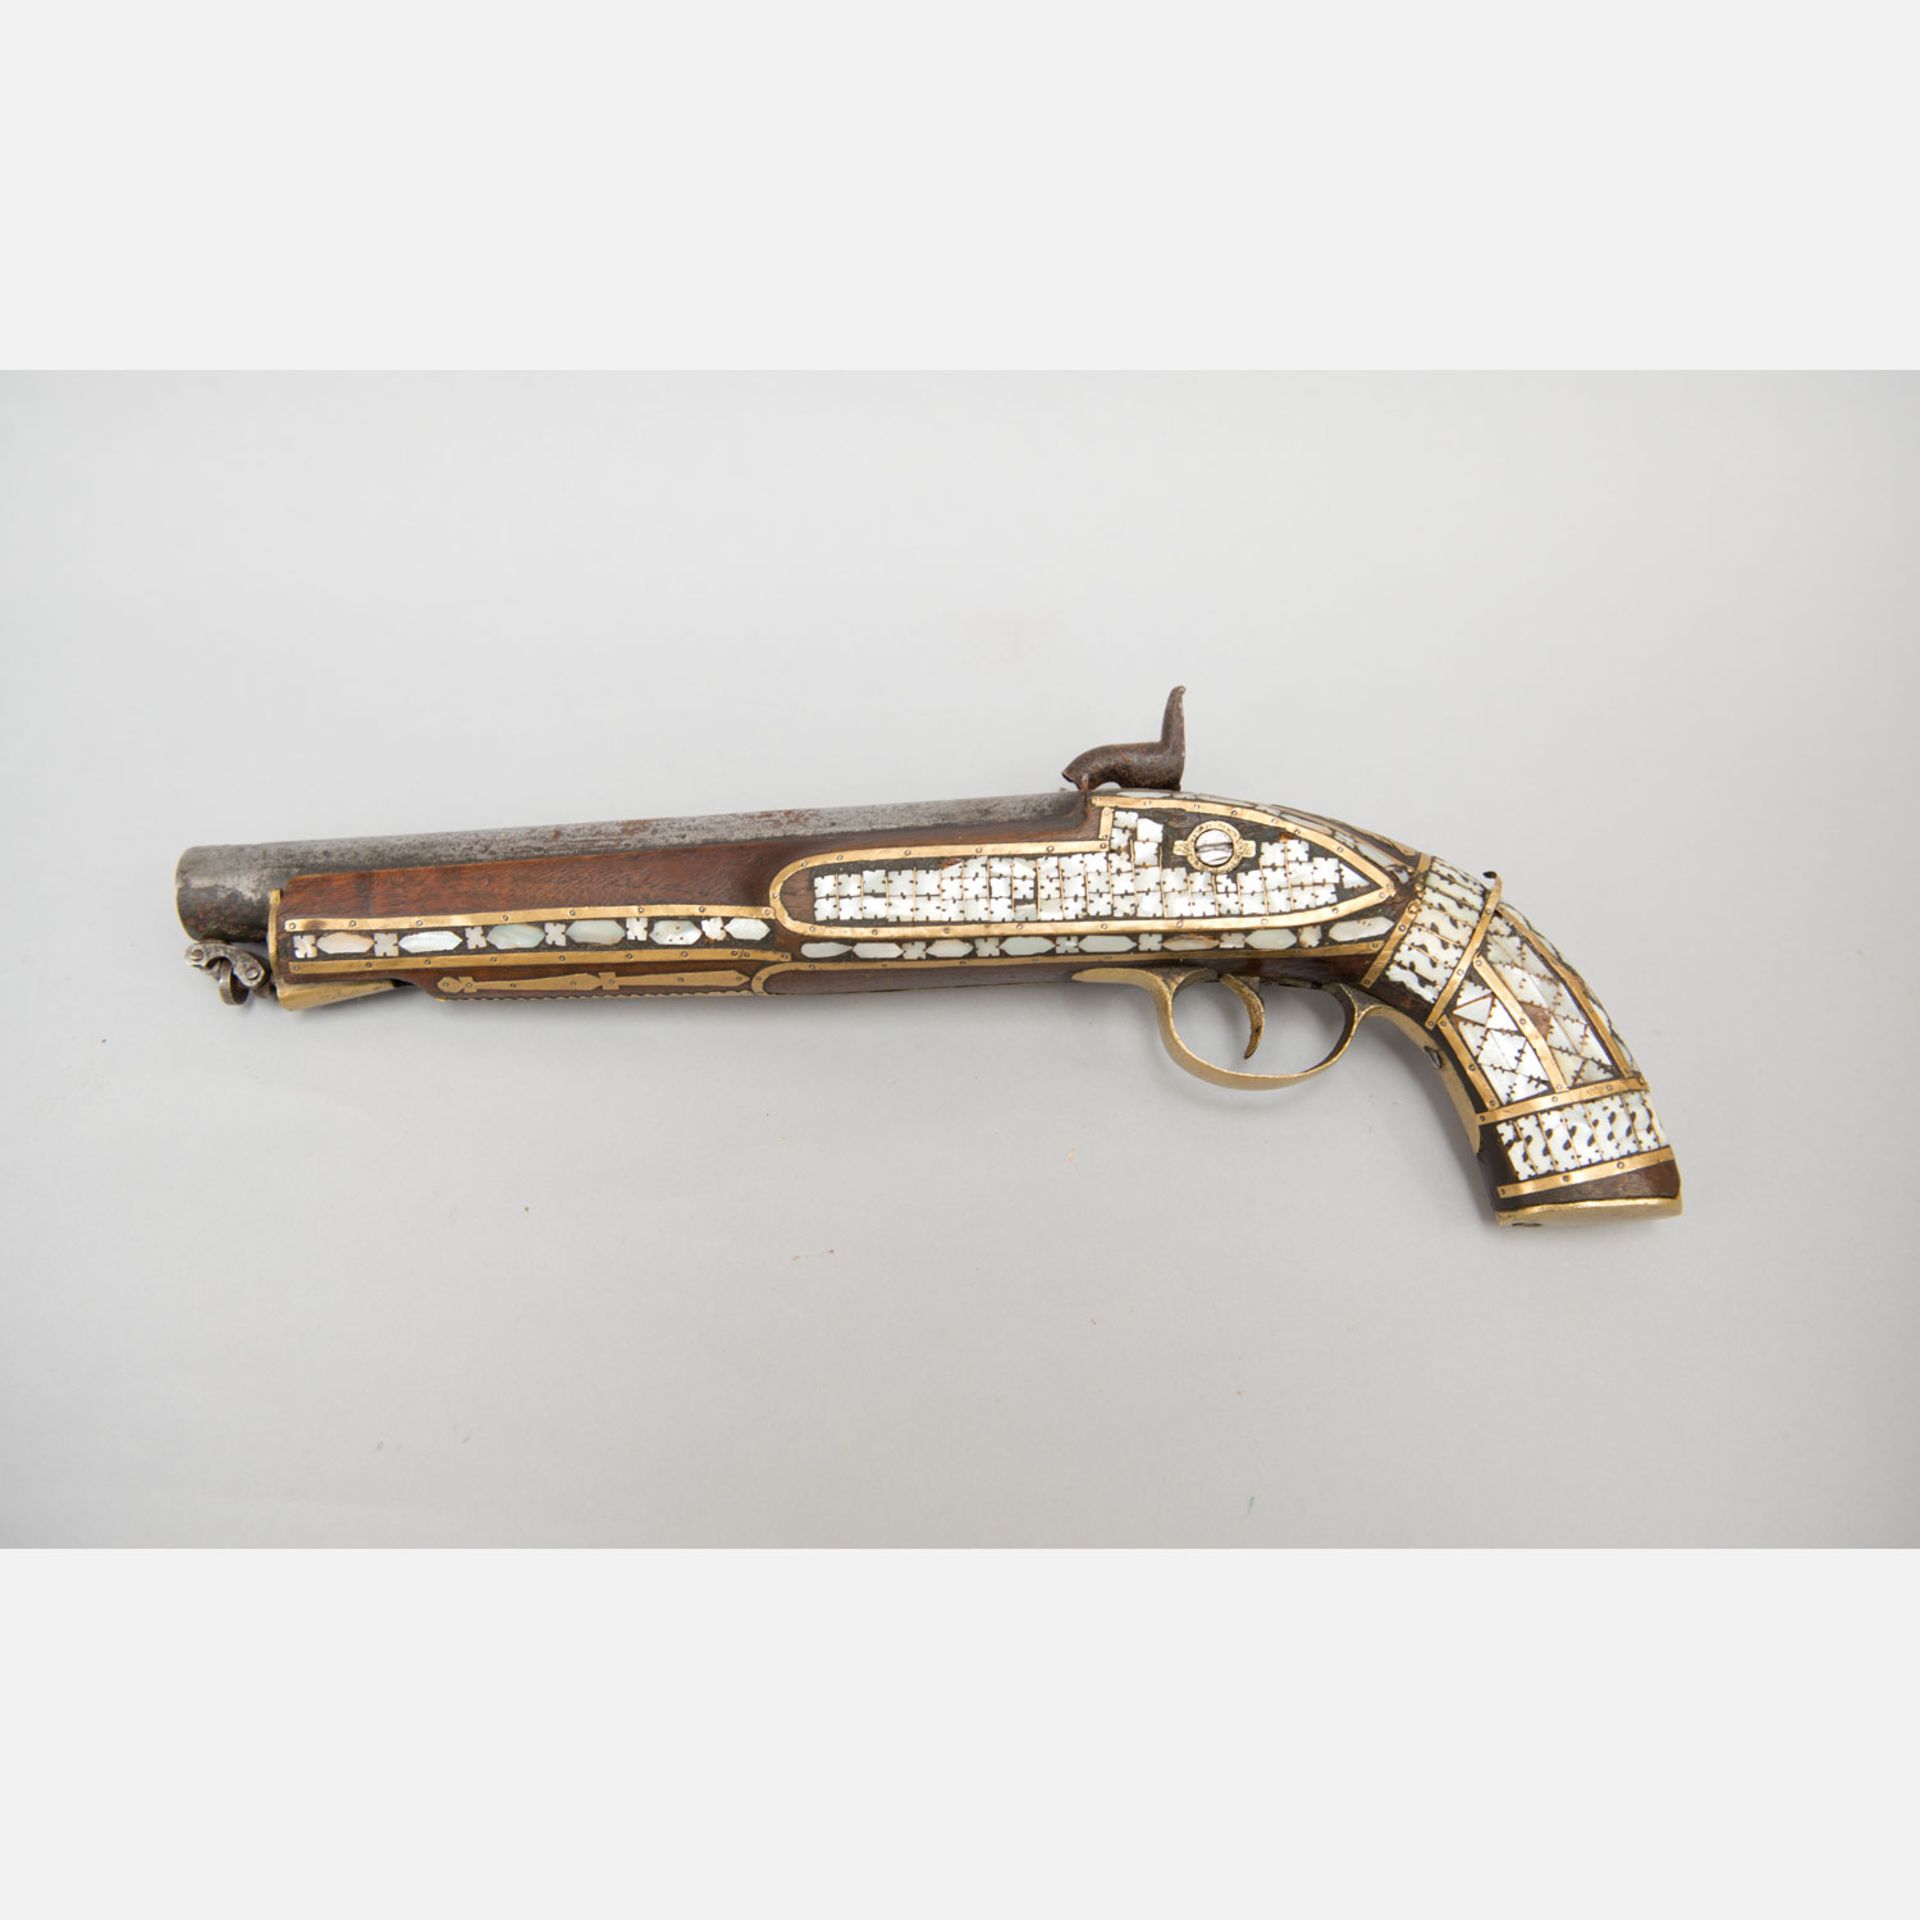 Ottoman Pistol - Image 2 of 3